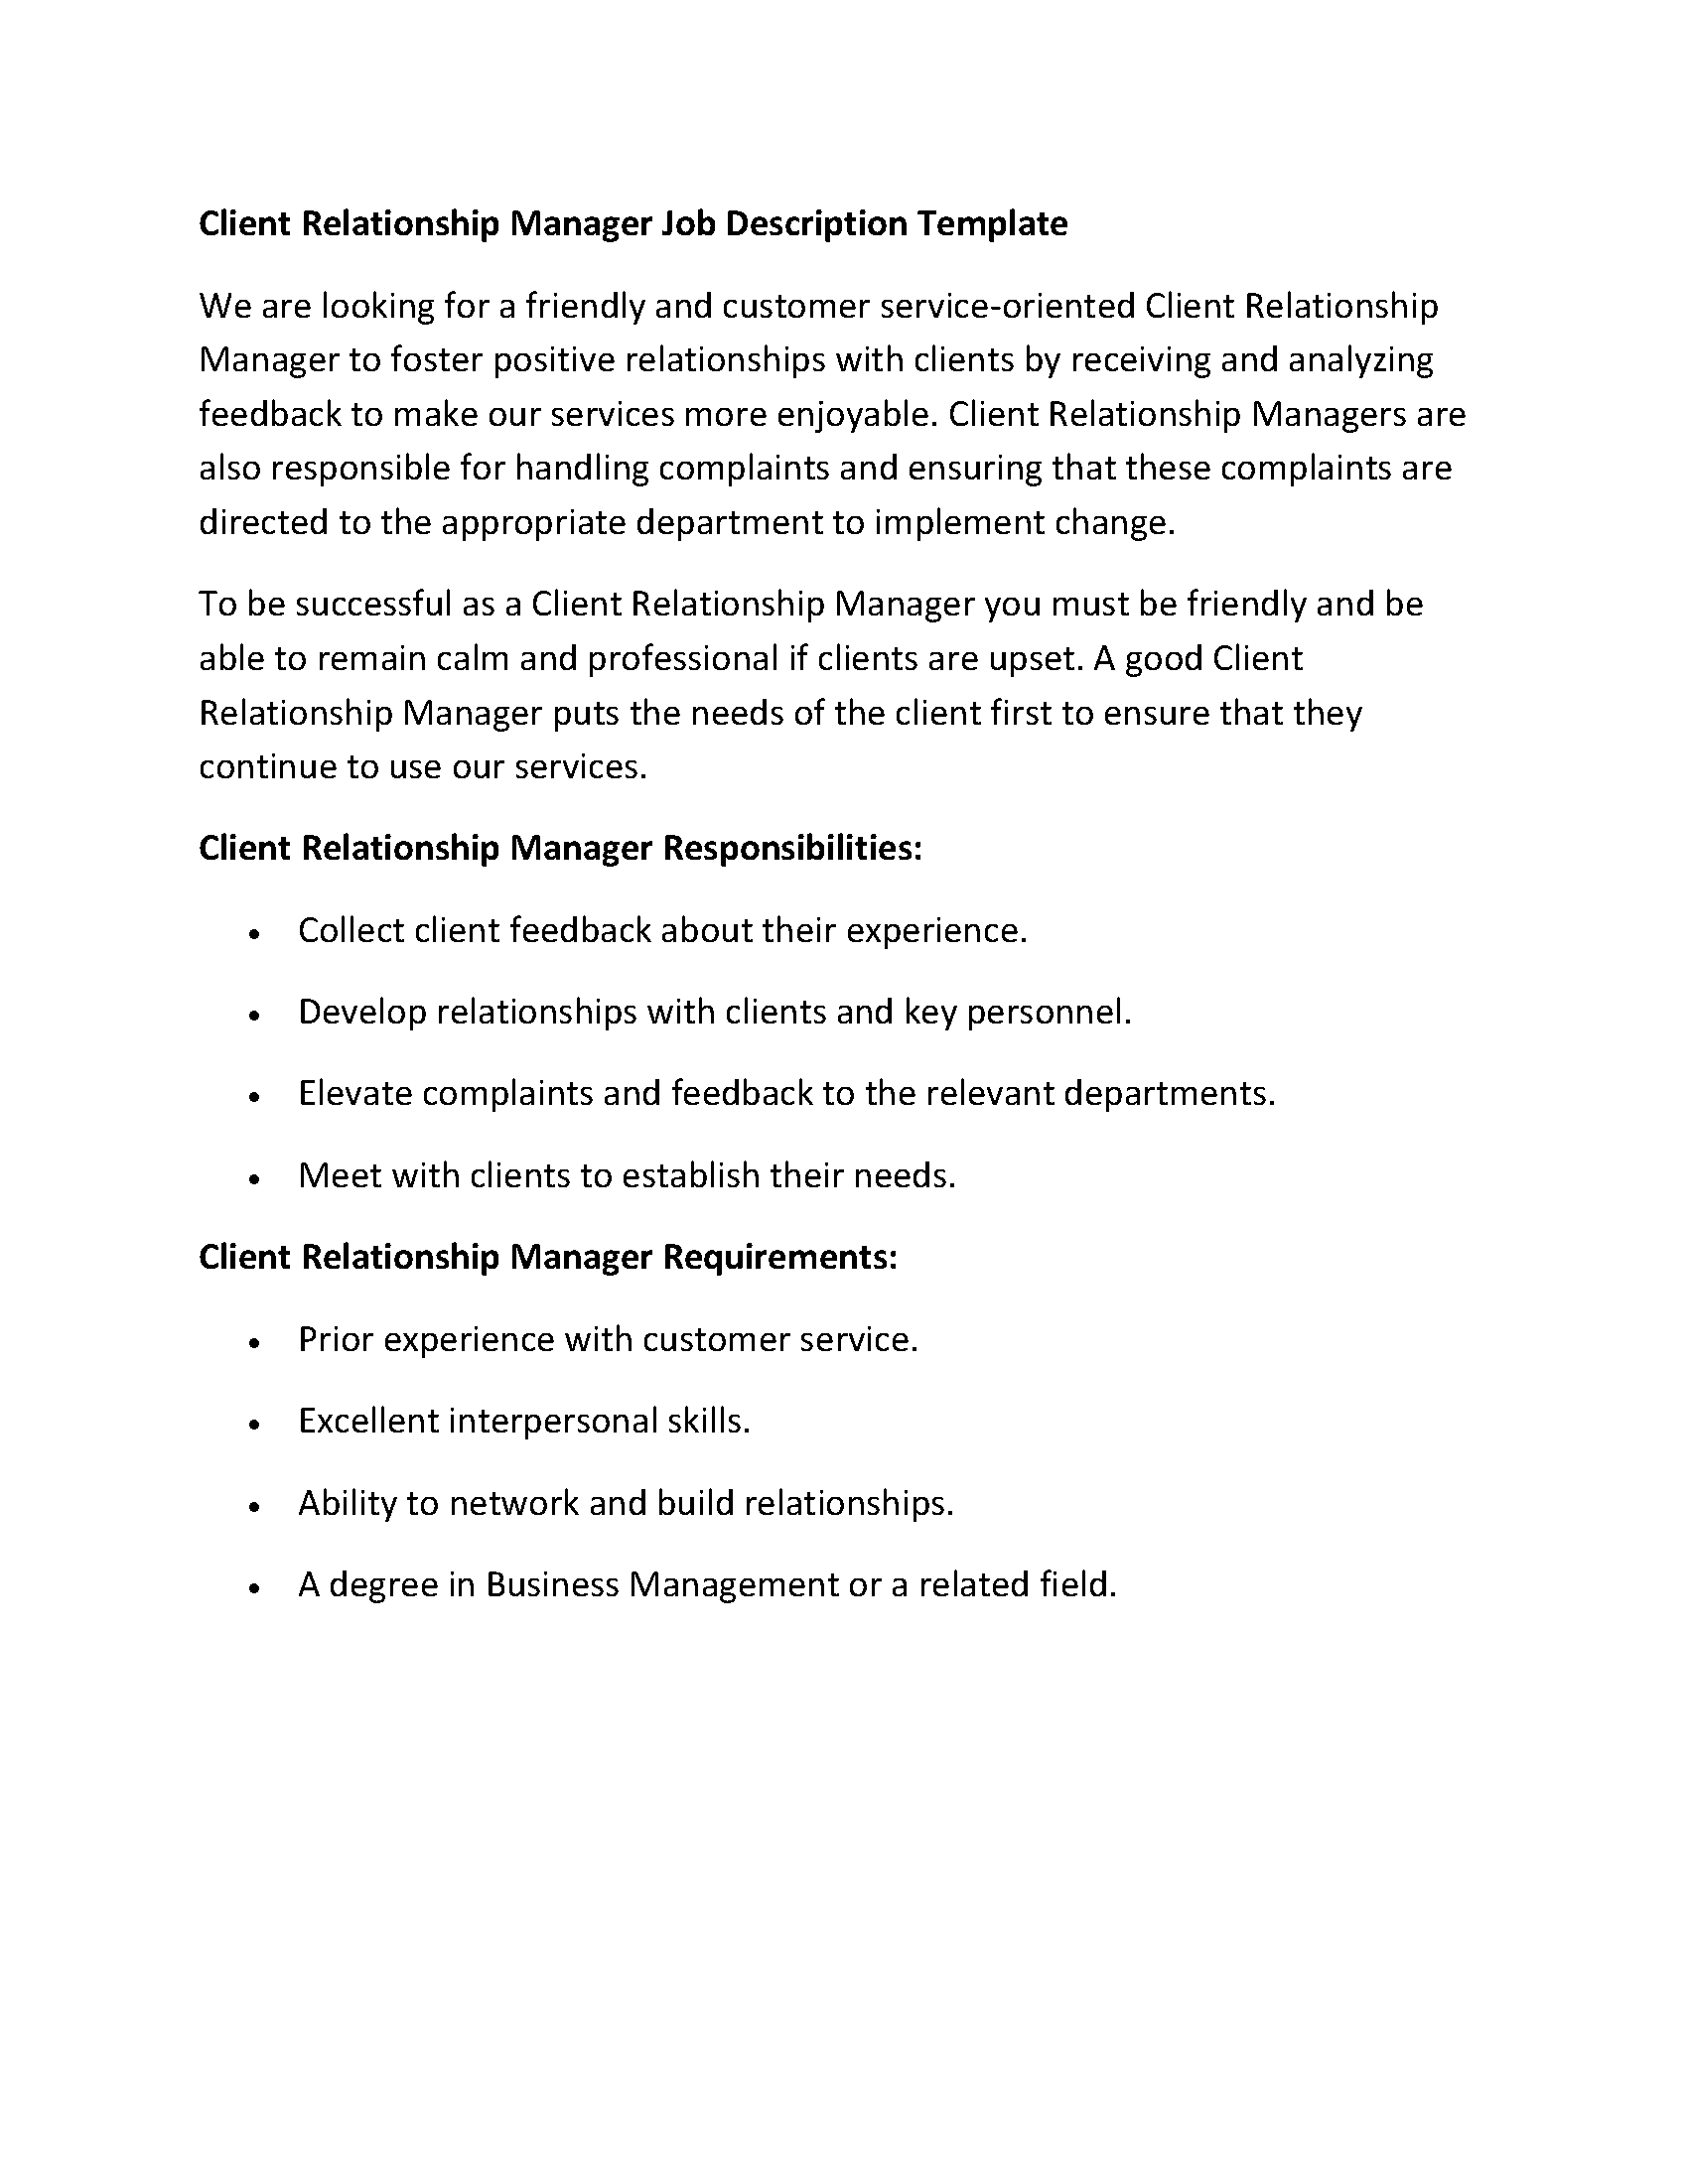 Client Relationship Manager Job Description Template